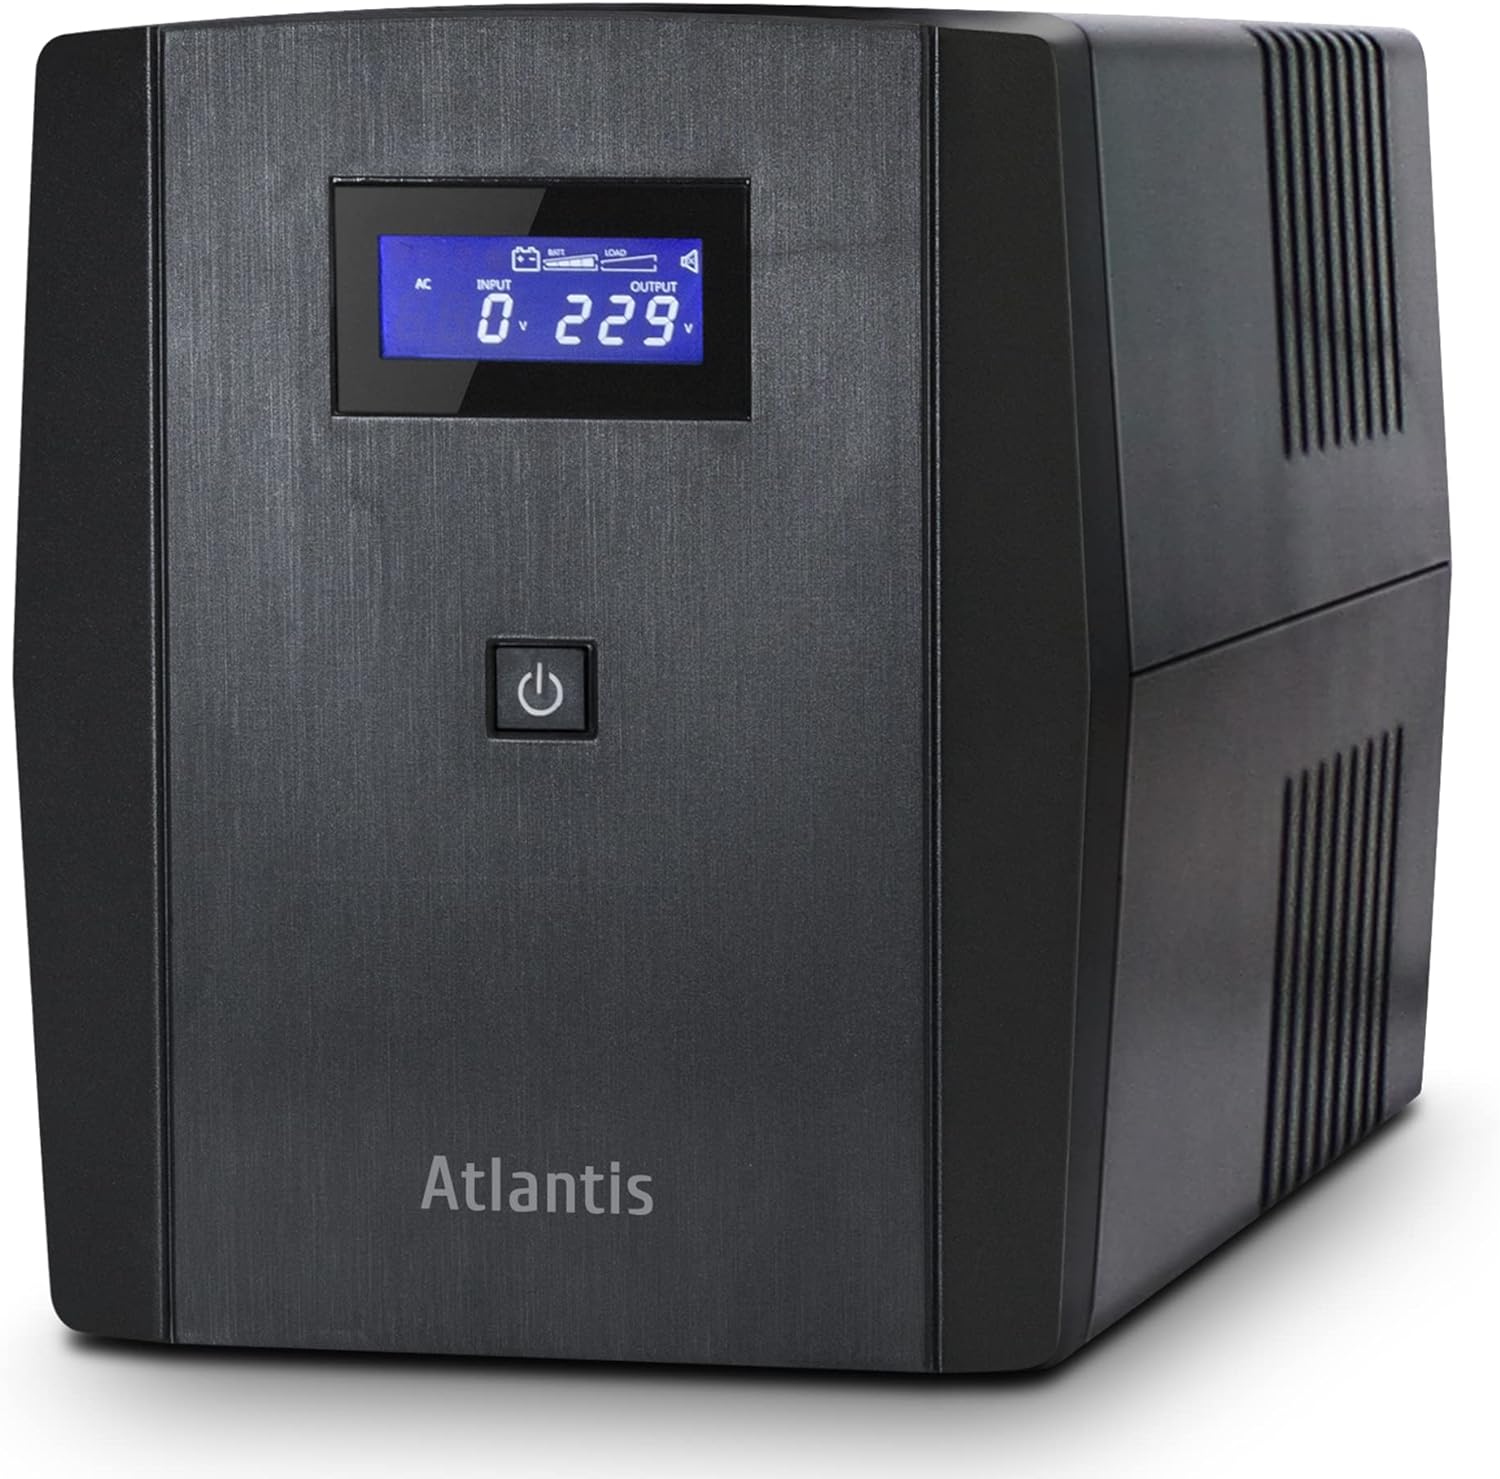 Atlantis Ups A03-S1501 1500va/900w